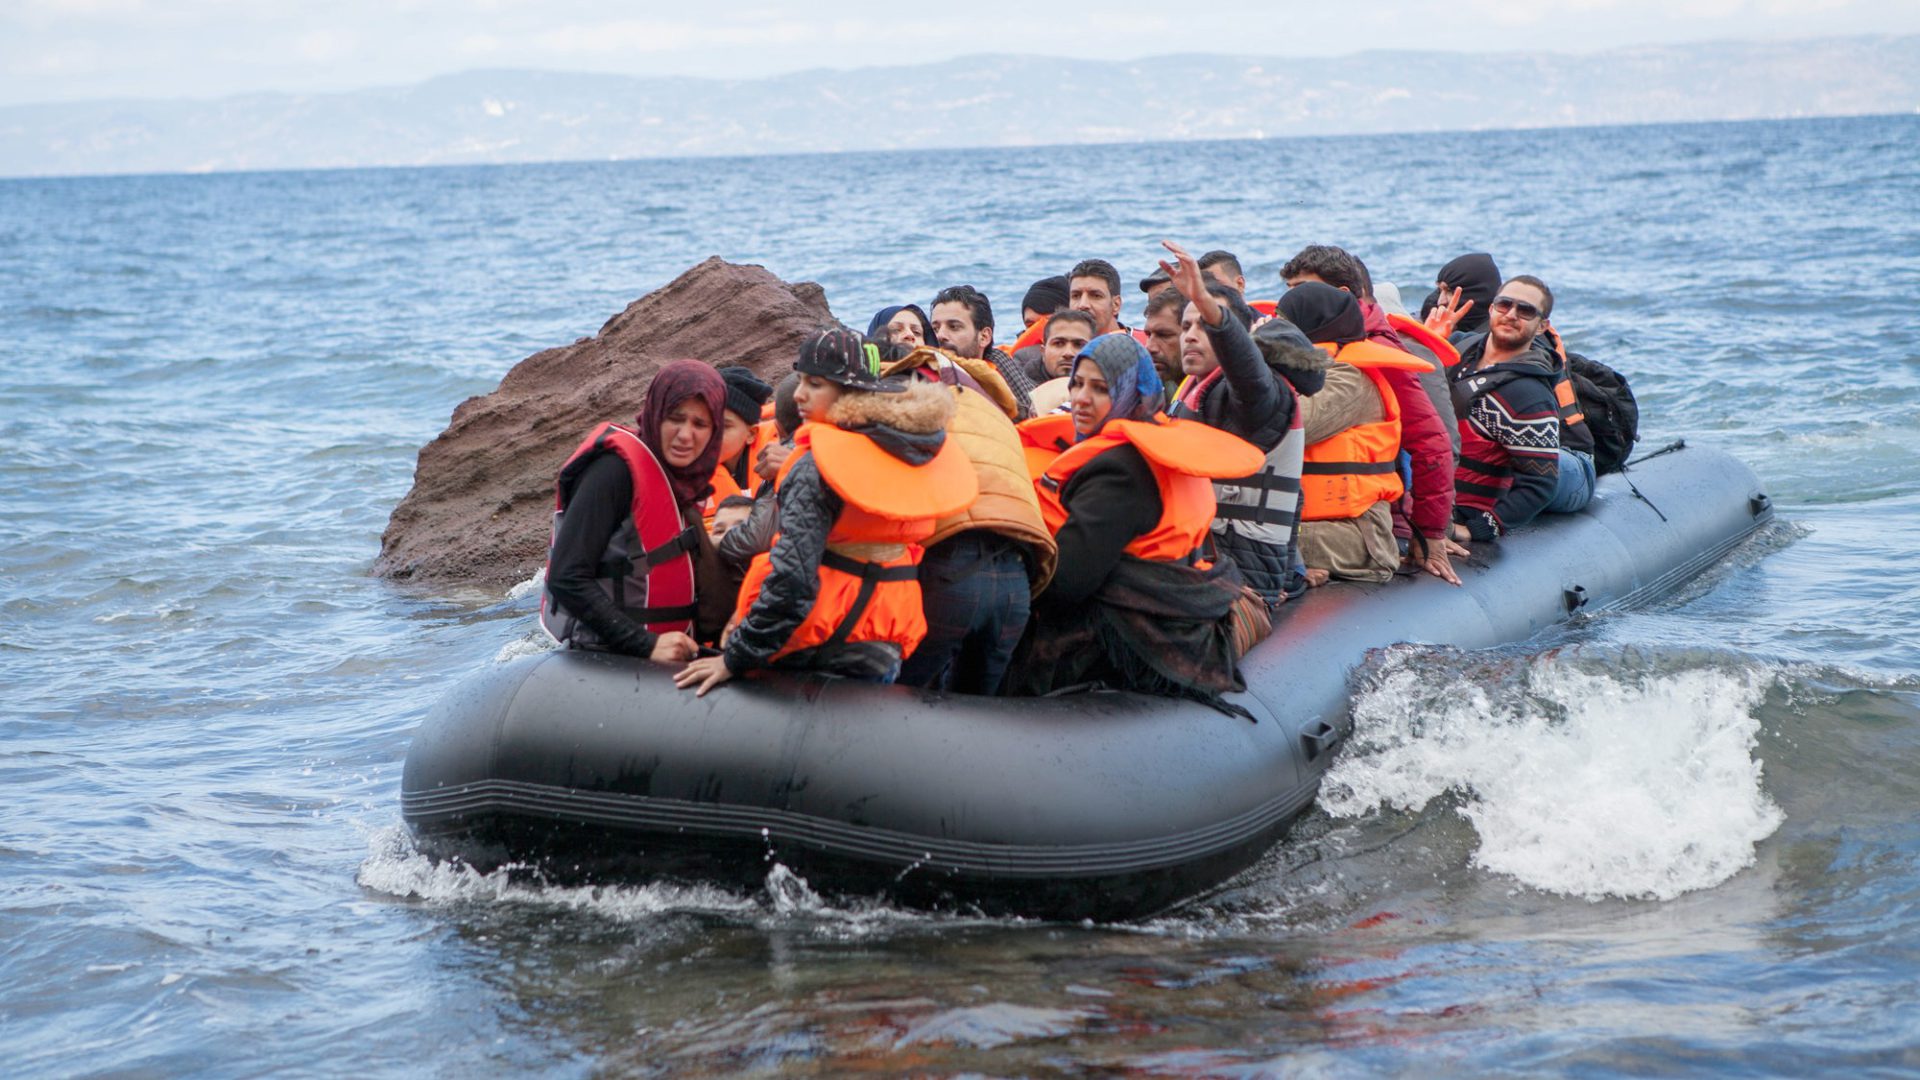 "Les réfugiés sont nos frères", a rappelé le pape François(Photo:CAFOD Photo Library/Flickr/CC BY-NC-ND 2.0)